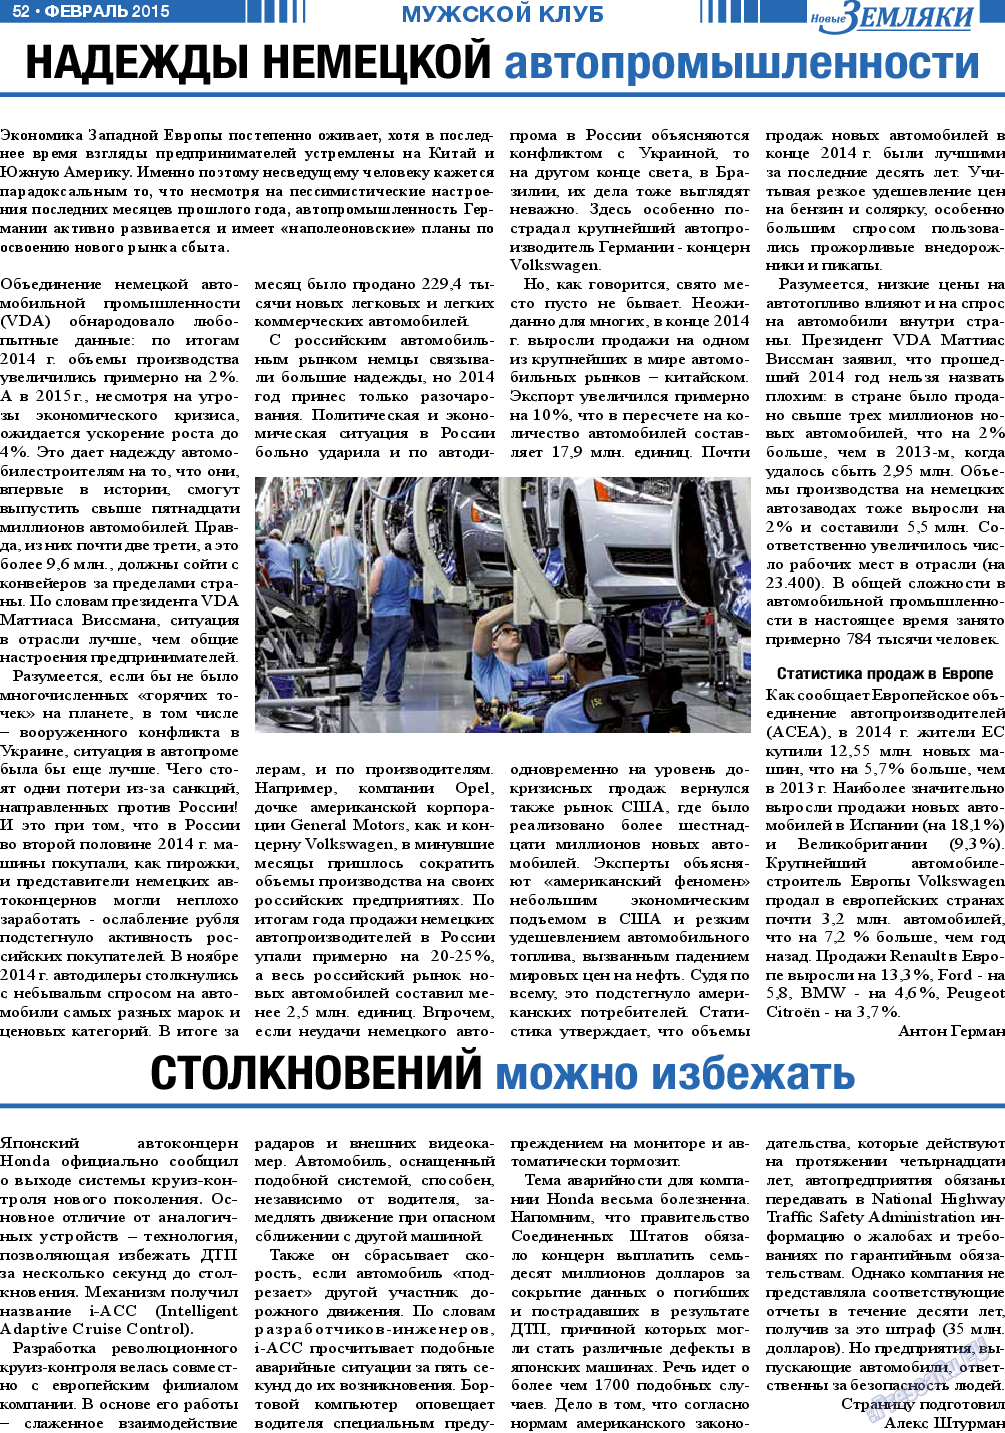 Новые Земляки, газета. 2015 №2 стр.52